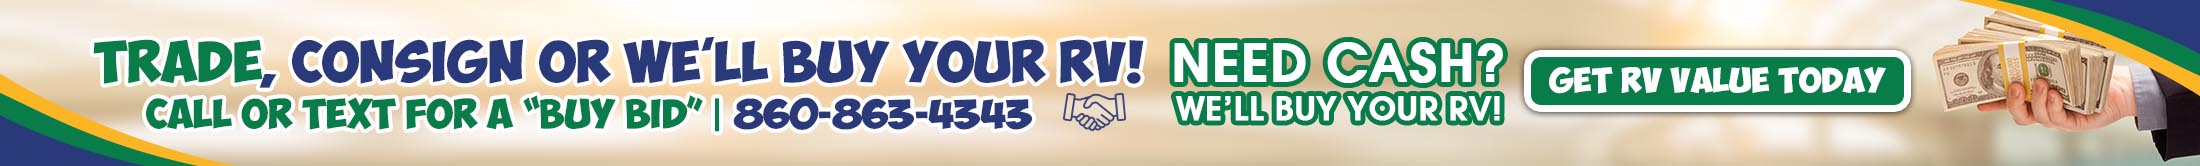 Trade Consign or Buy RVs at Hemlock Hill RV